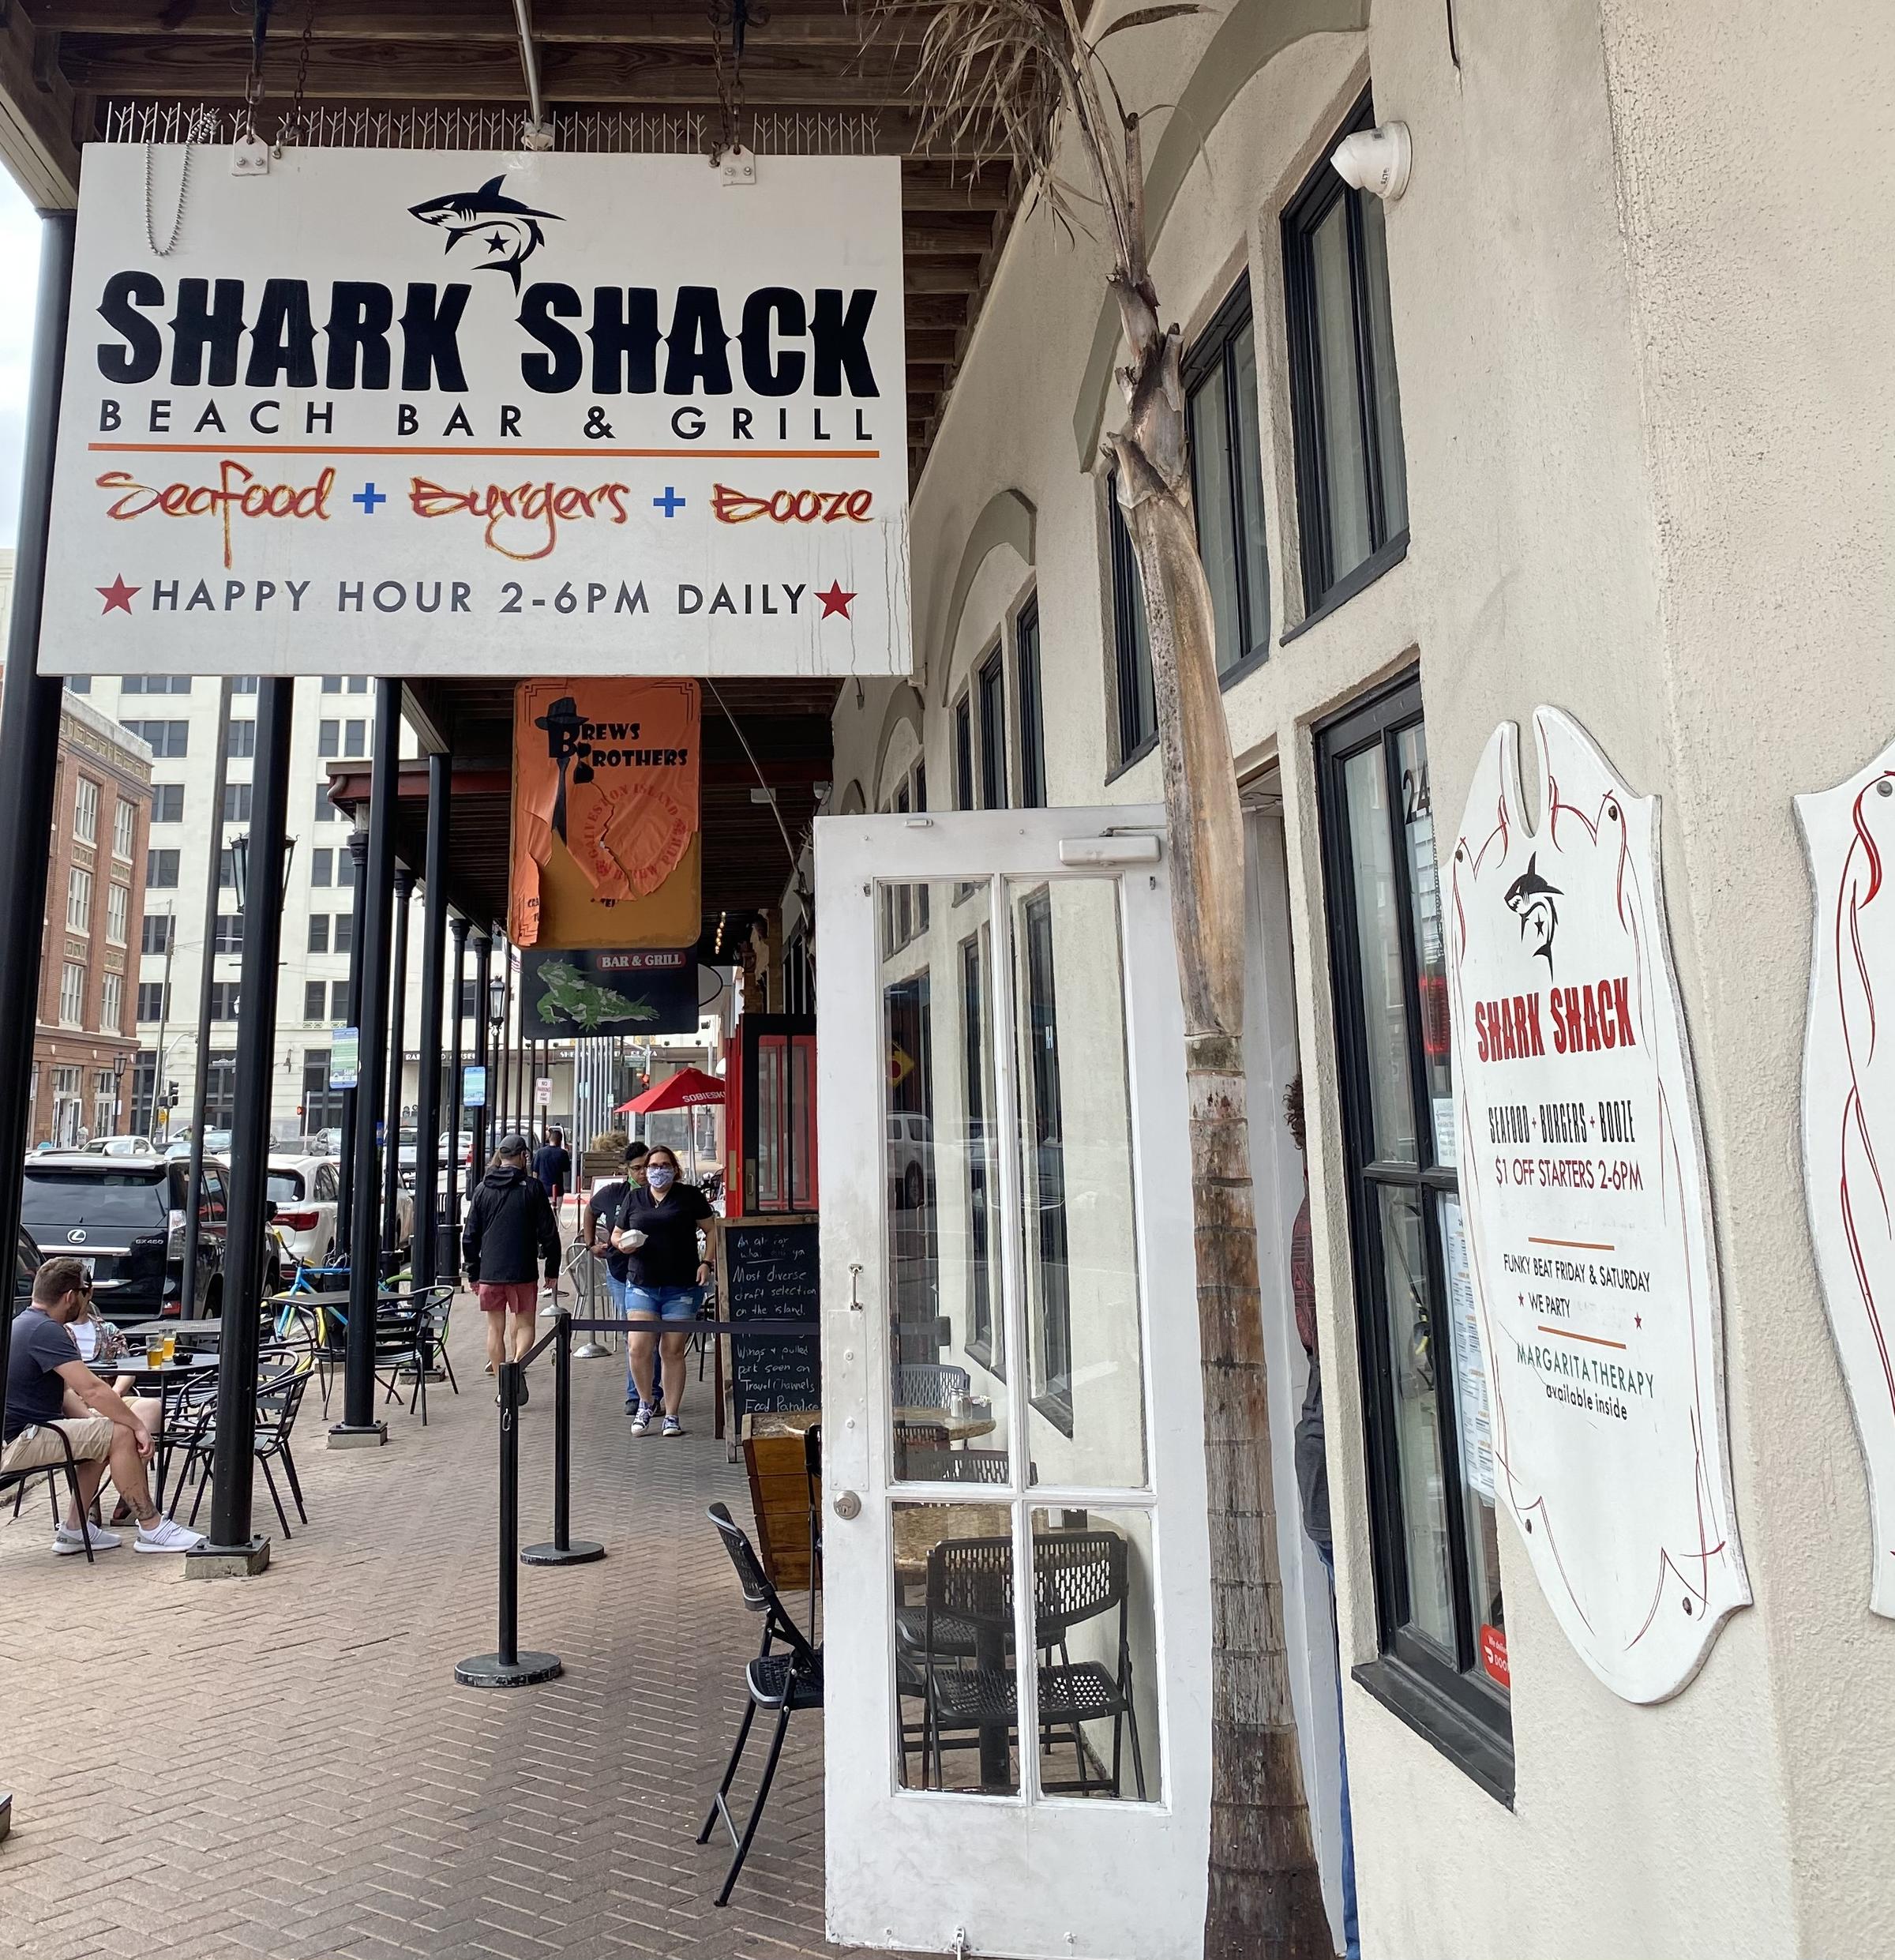 Pet Friendly Shark Shack Beach Bar & Grill